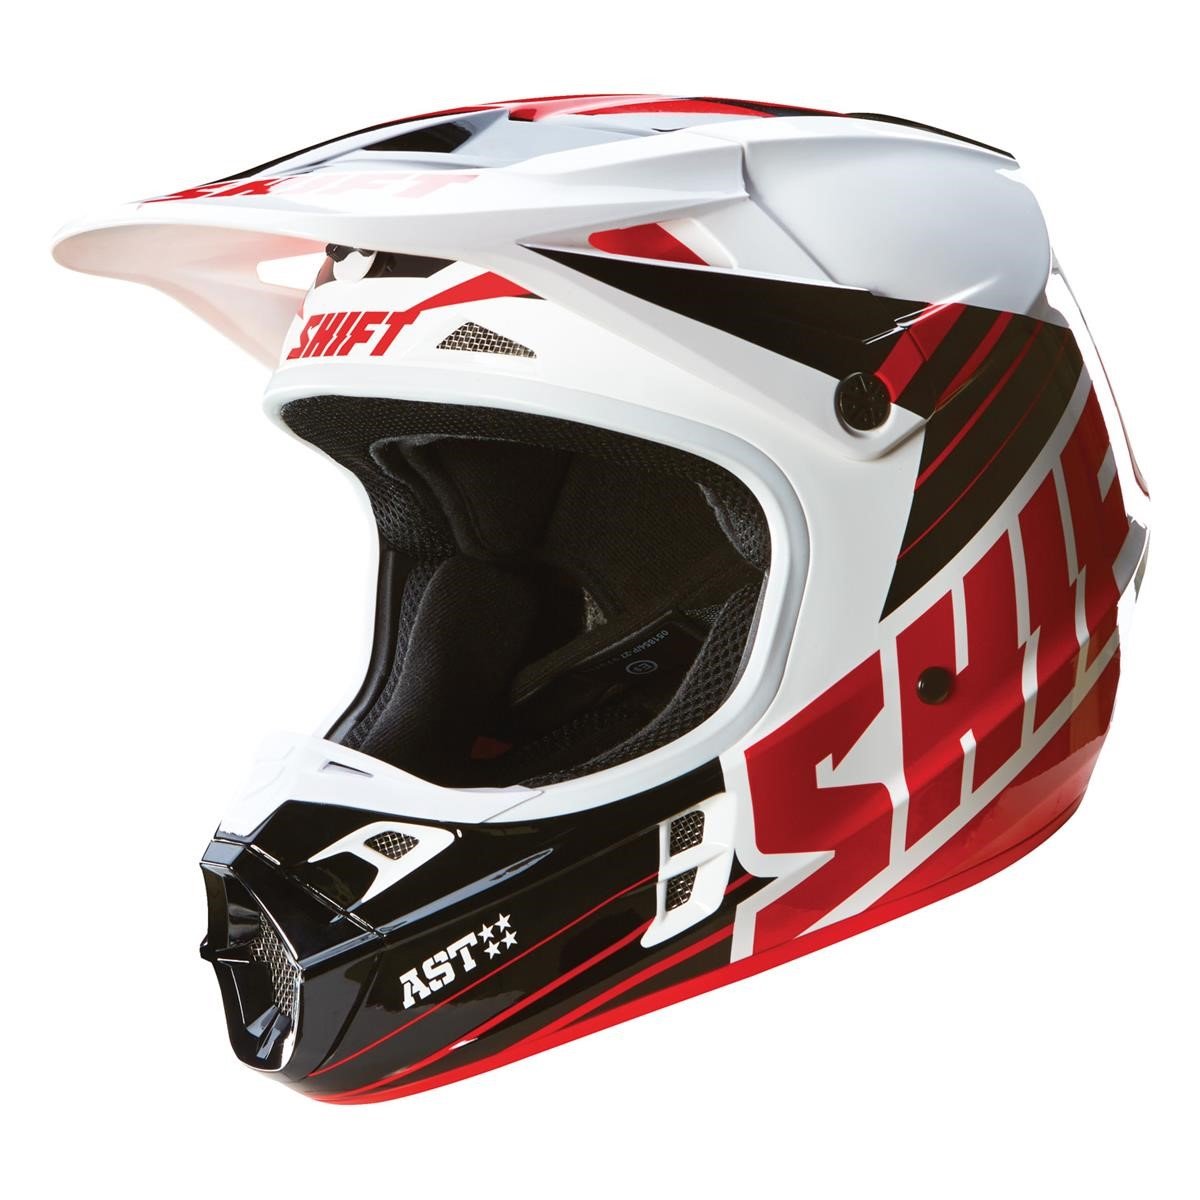 Shift Helmet V1 Assault Race Black/White